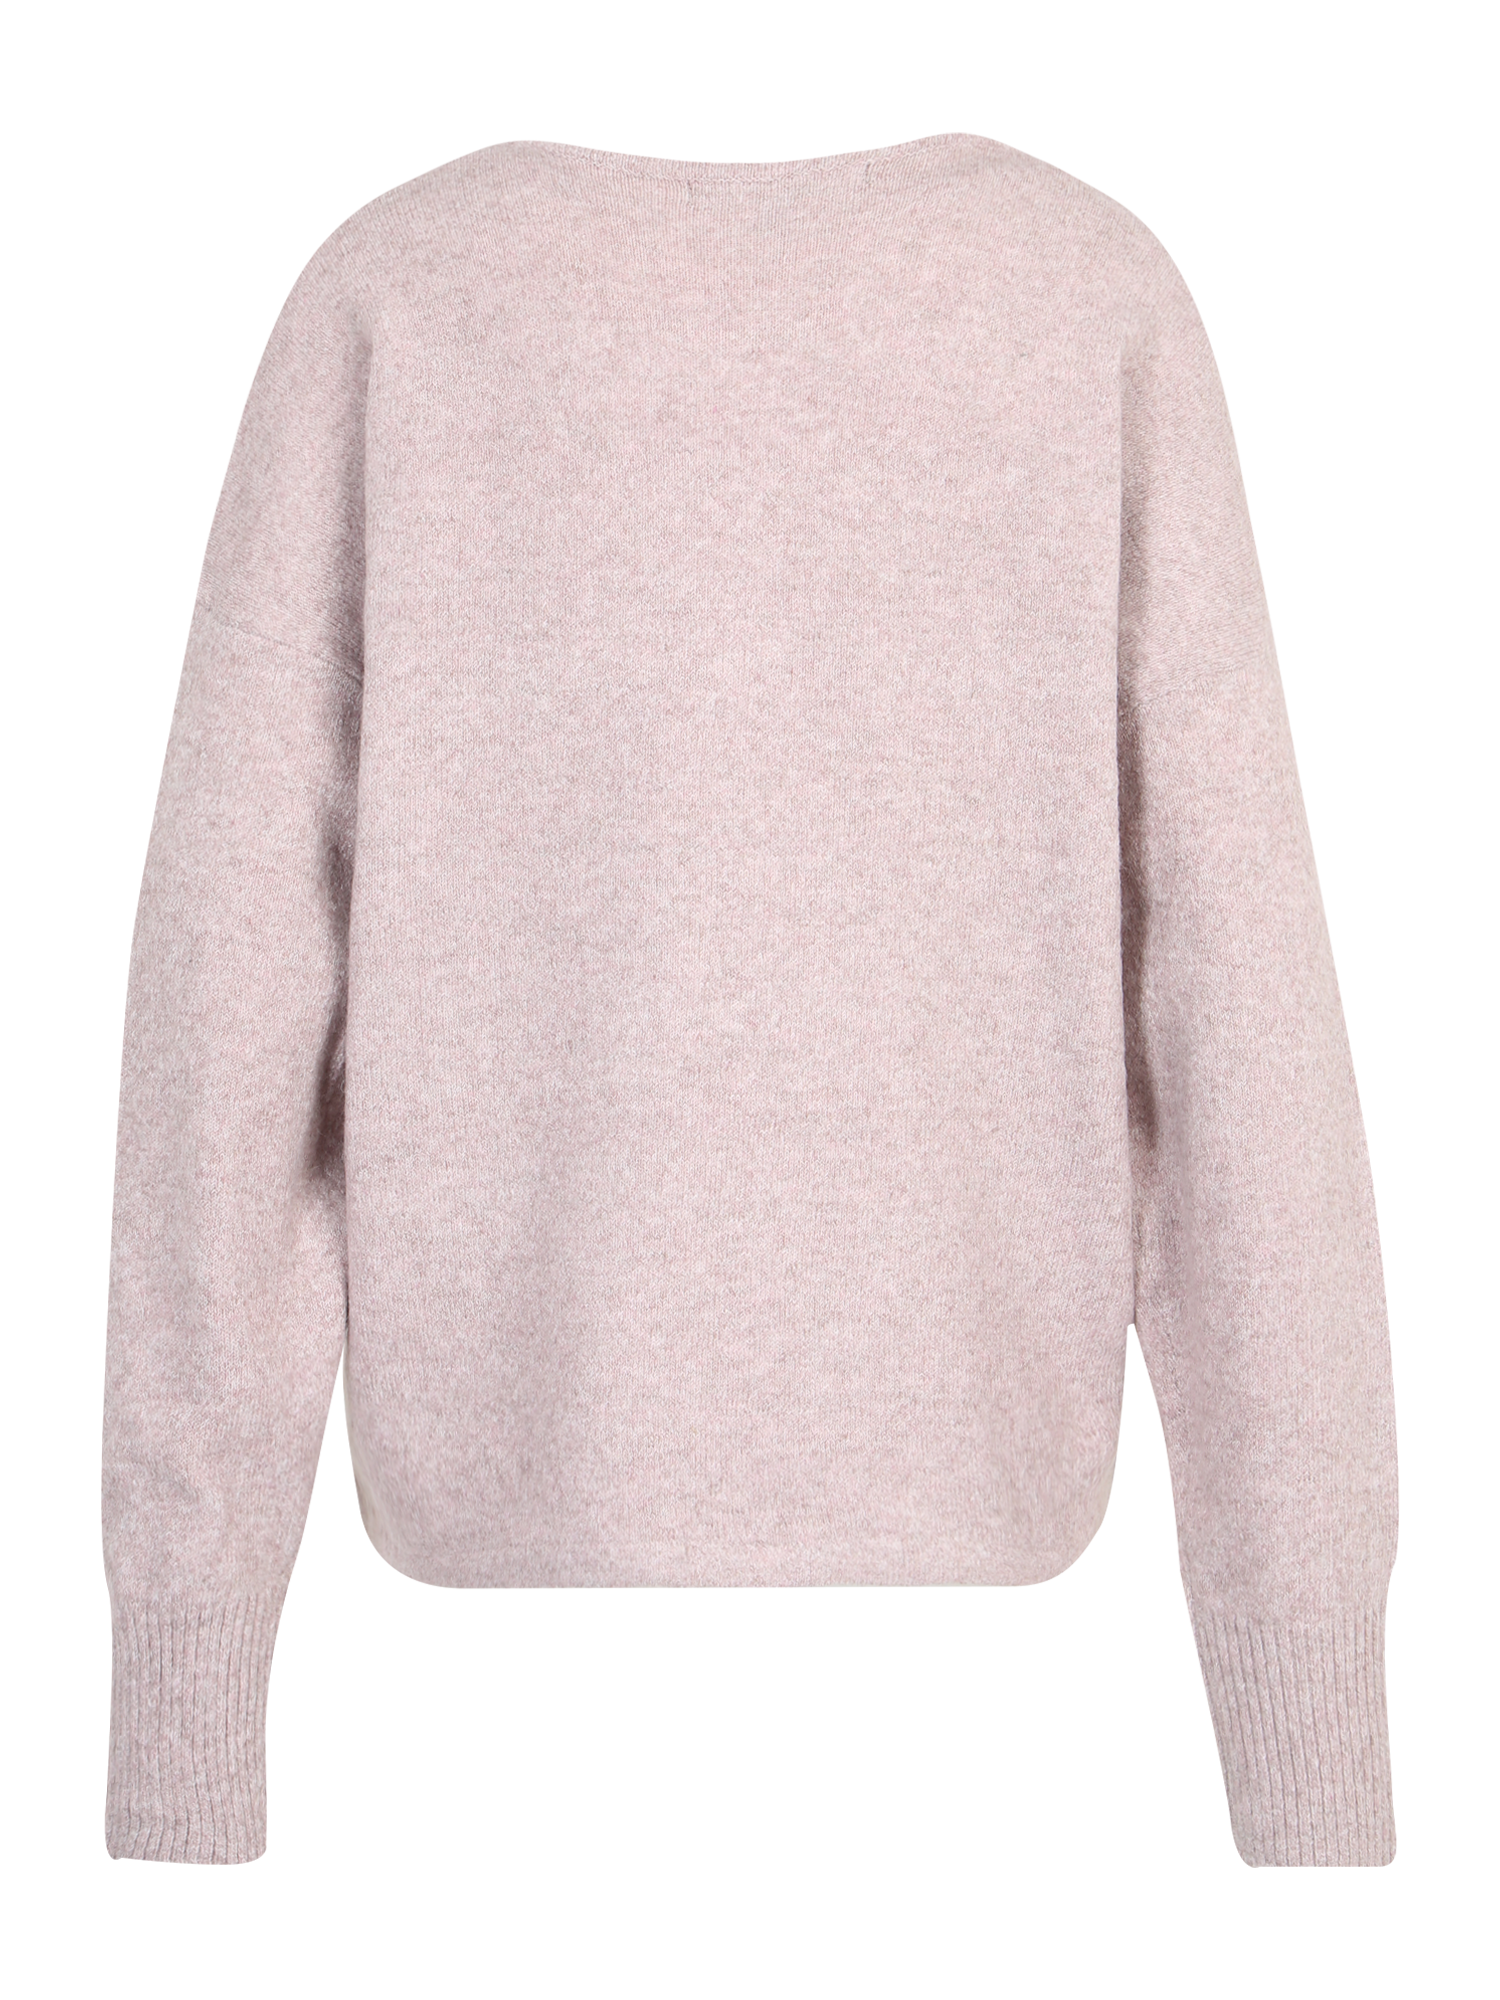 C97Qa Swetry & dzianina Vero Moda Tall Sweter DOFFY w kolorze Różowy Pudrowym 